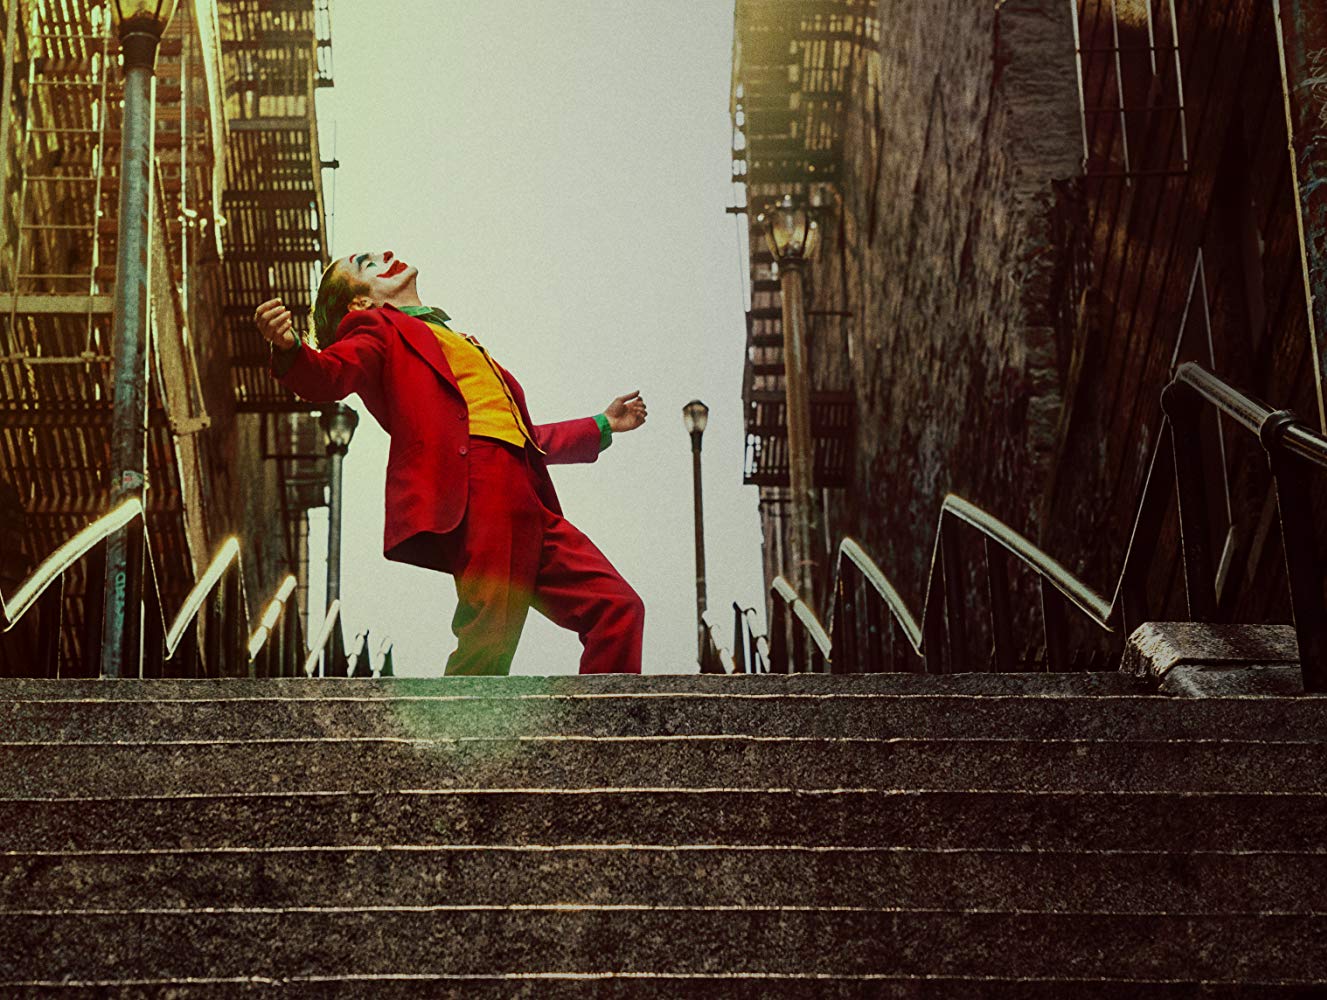 سکانس جذاب رقص خواکین فینیکس در فیلم «جوکر» (Joker) روی پله هایی در نیویورک سیتی باعث شده که این پله ها به یک جاذبه گردشگری جدید برای این شهر تبدیل شوند.